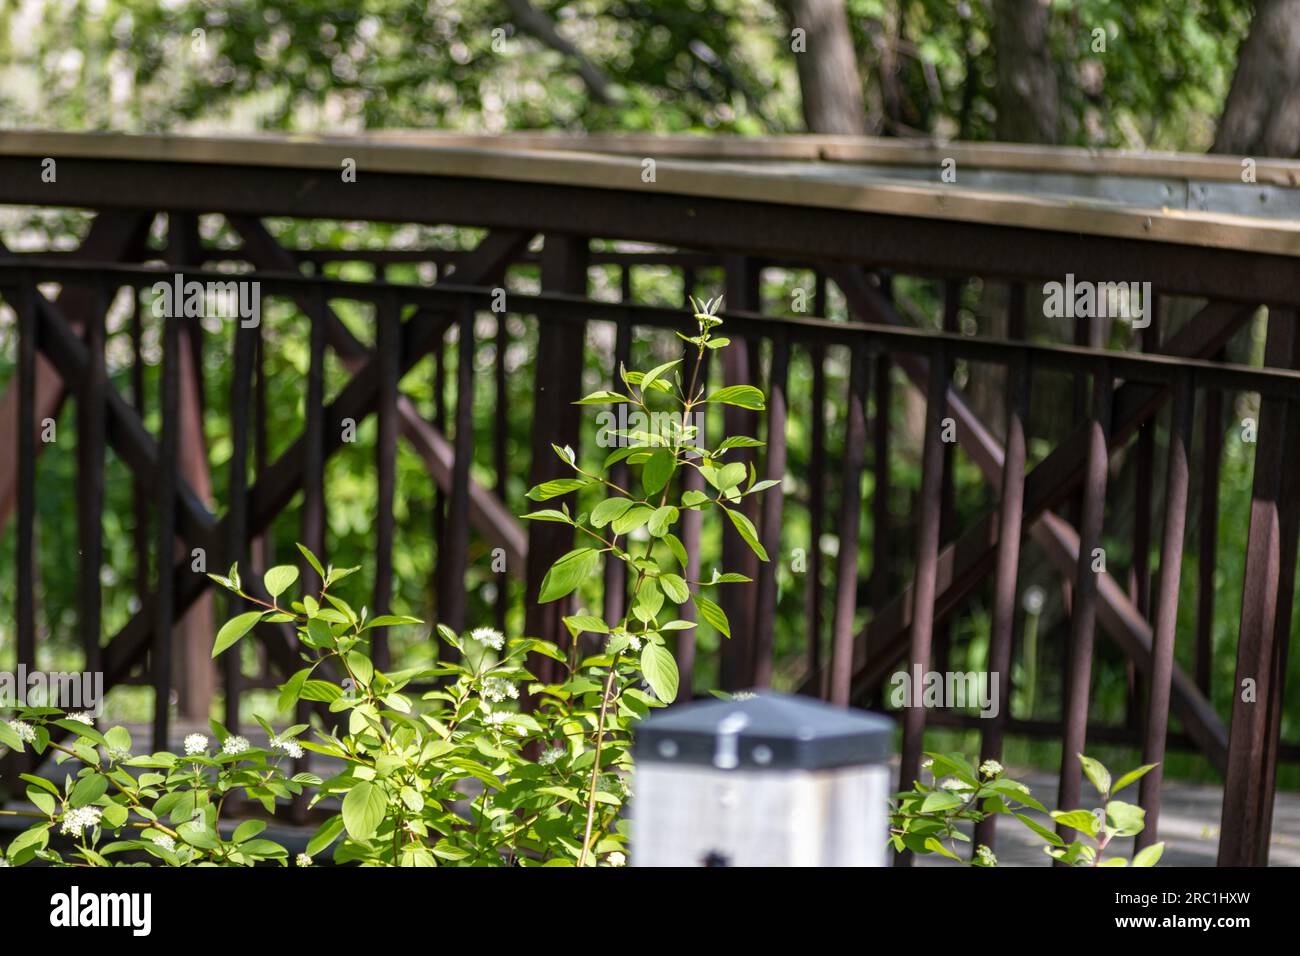 Clôture en bois avec pont en bois en arrière-plan - feuilles - fond vert. Prise à Toronto, Canada. Banque D'Images